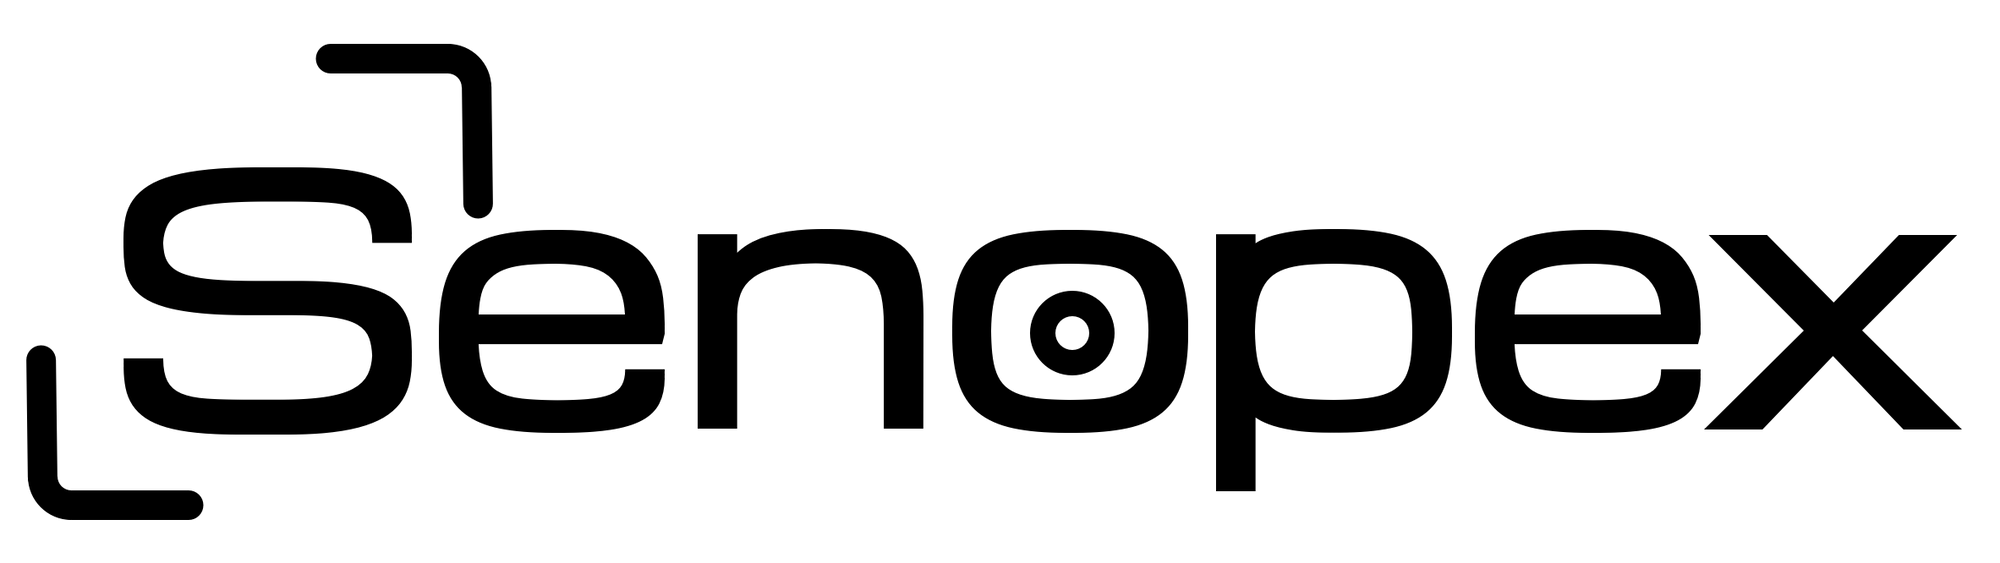 Senopex logo